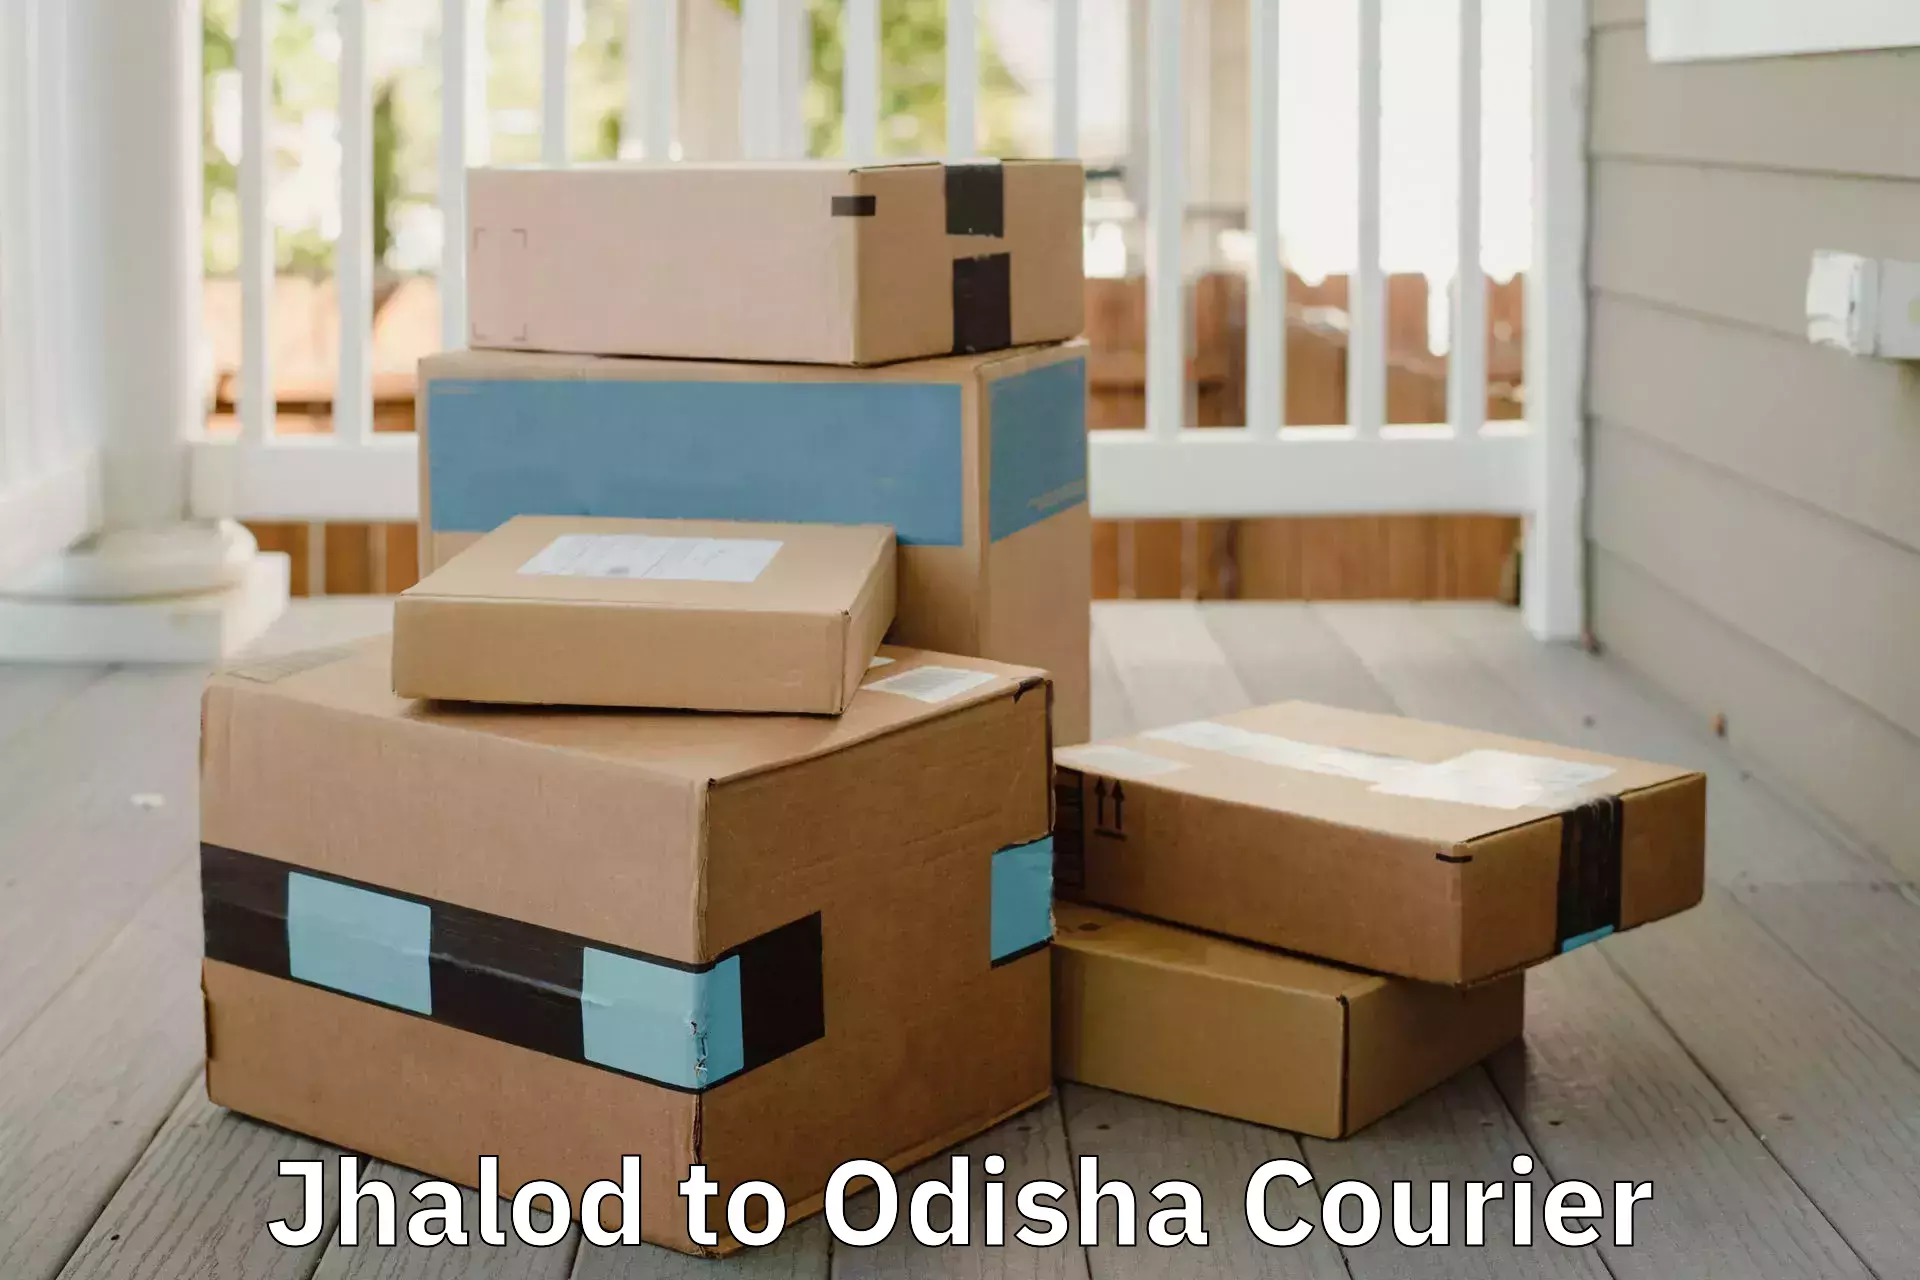 Furniture moving plans Jhalod to Mathili